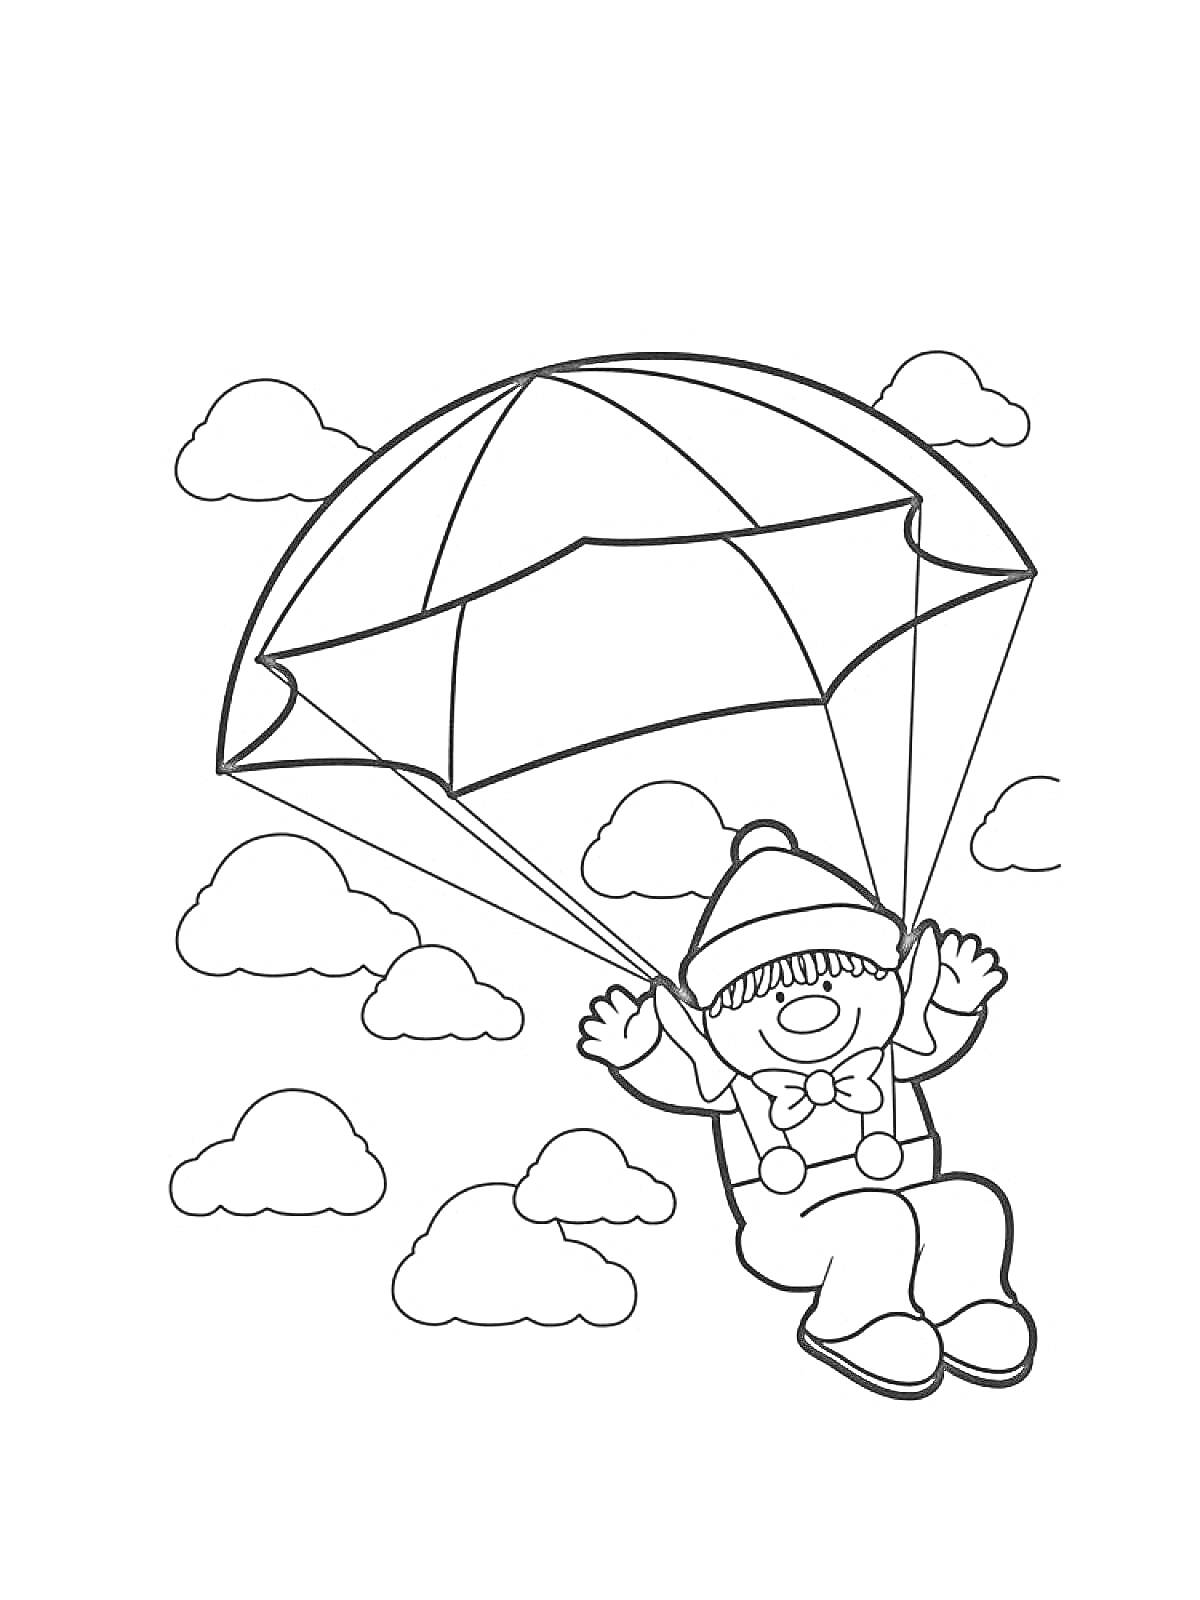 Раскраска Ребёнок на парашюте с облаками на заднем плане